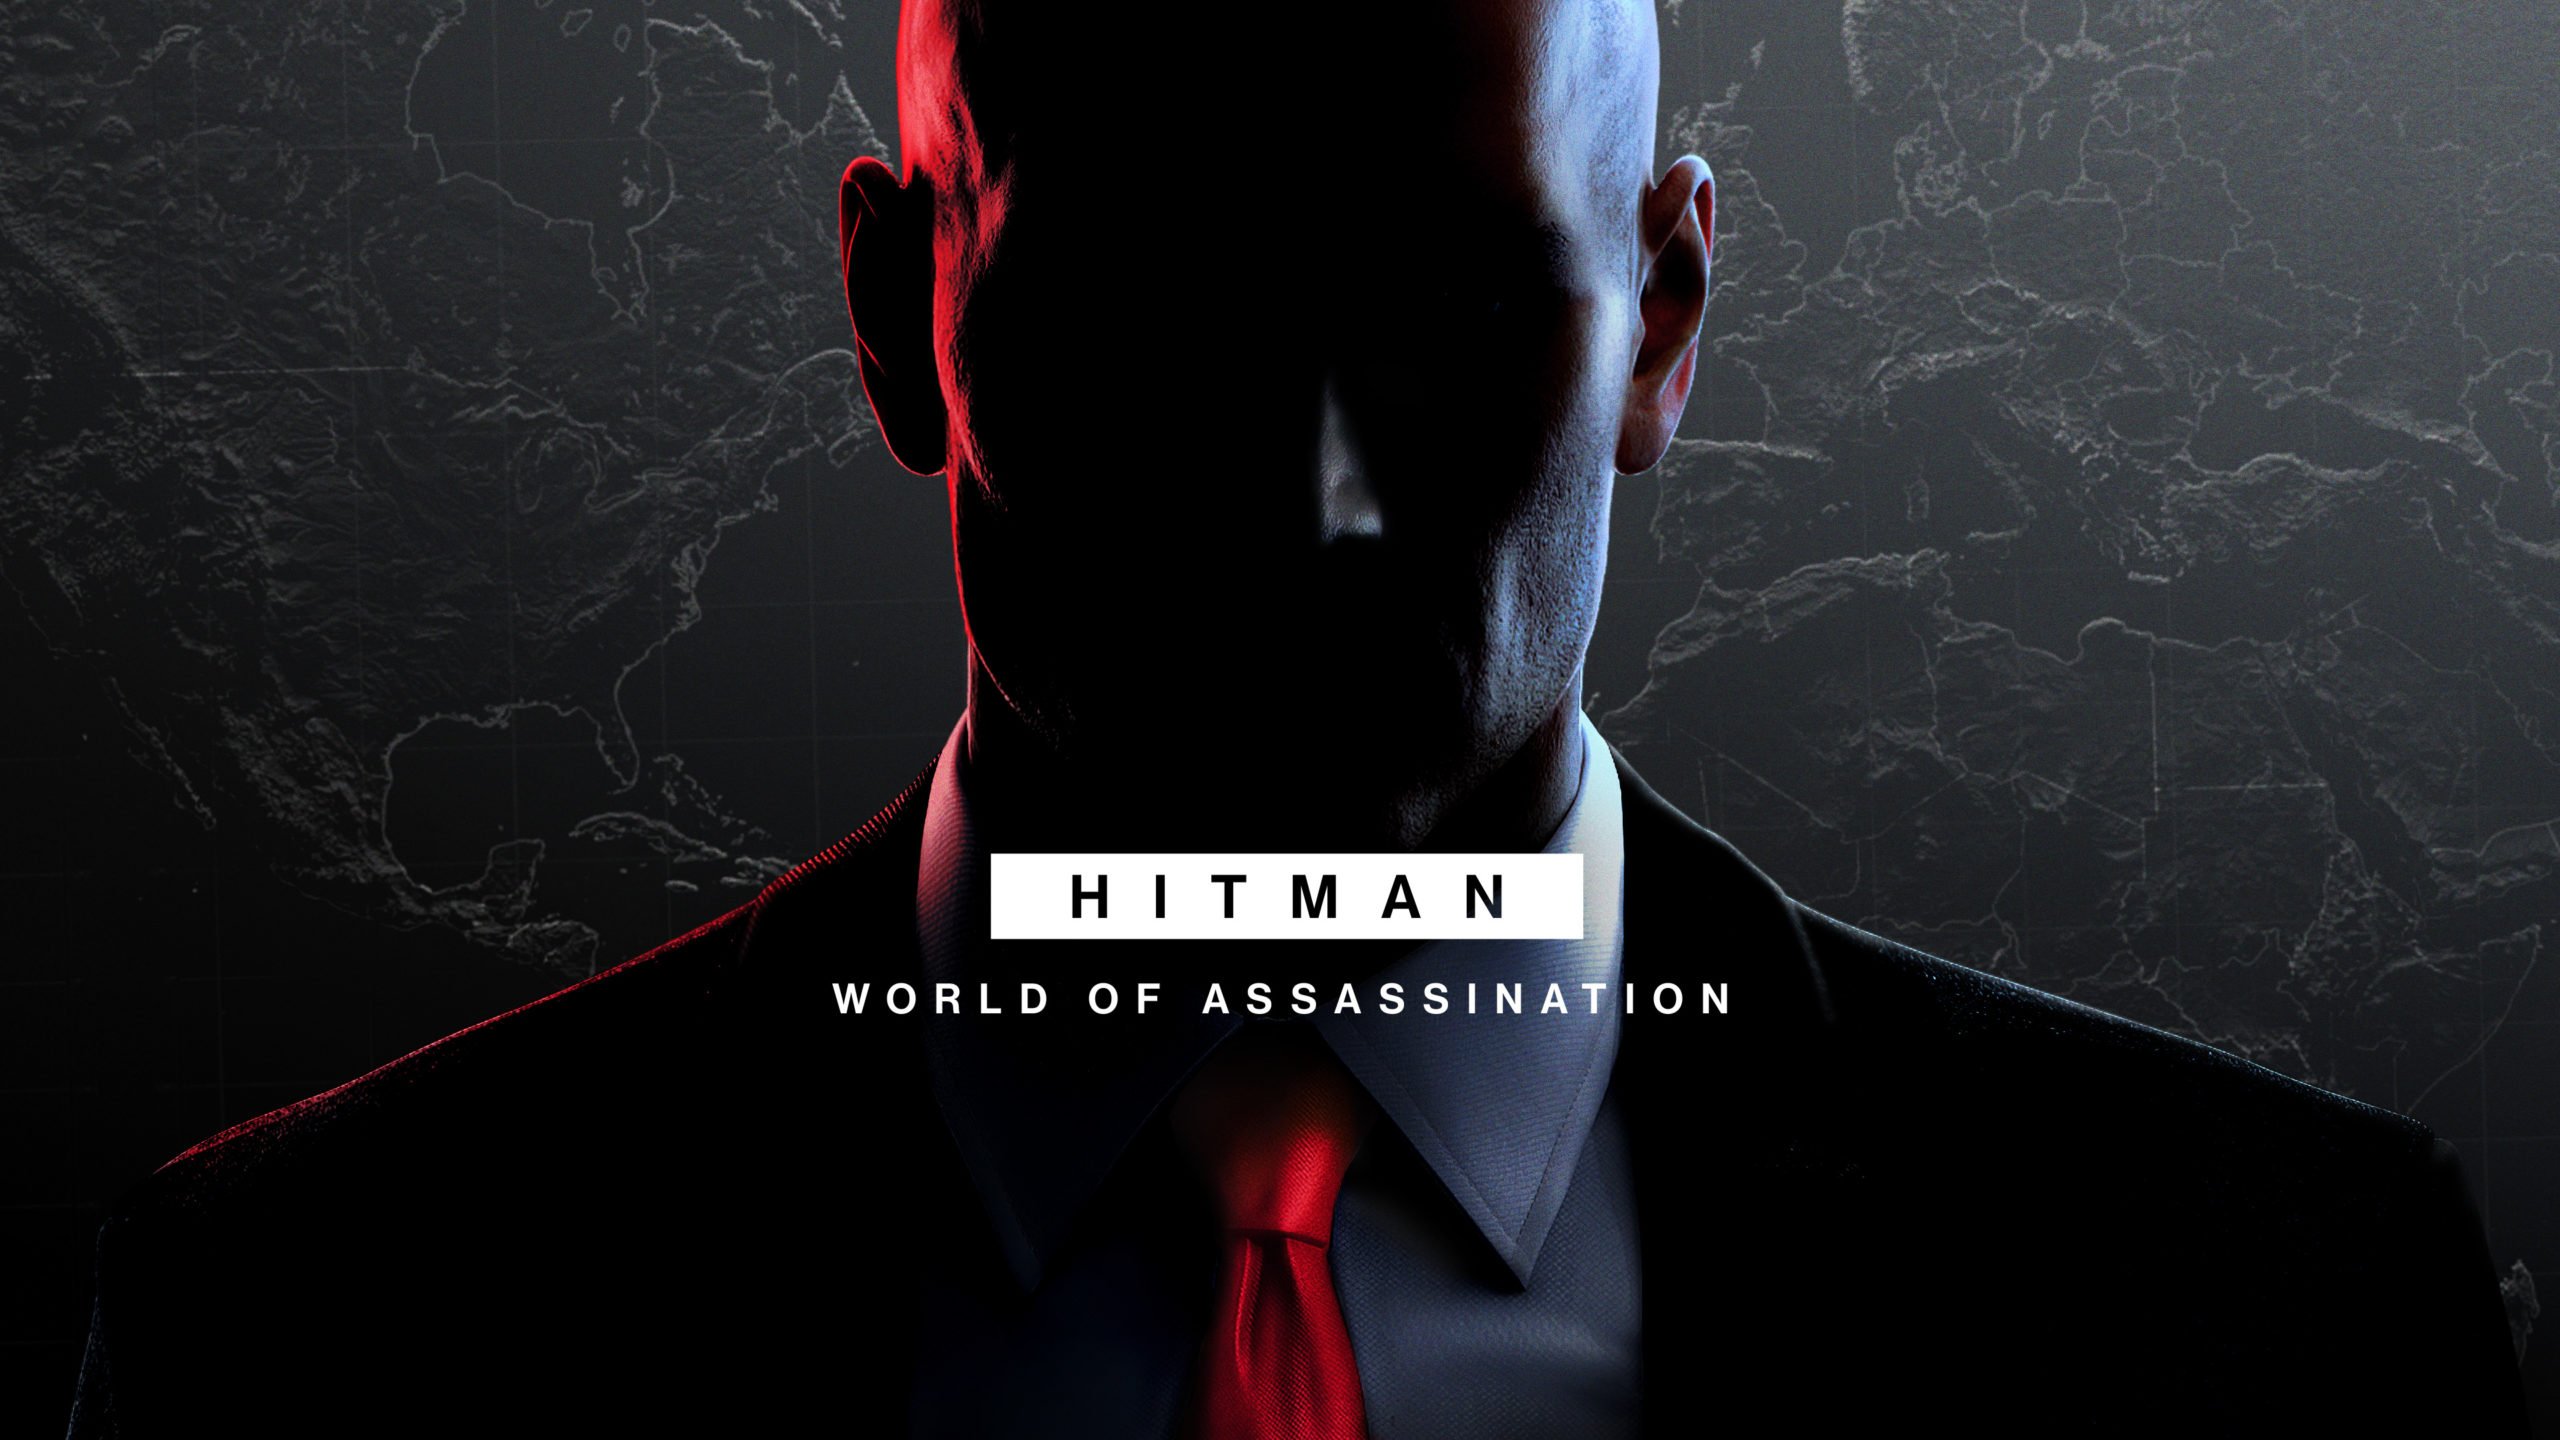 Hitman III cambia su nombre a Hitman: World of Assassination el 26 de enero